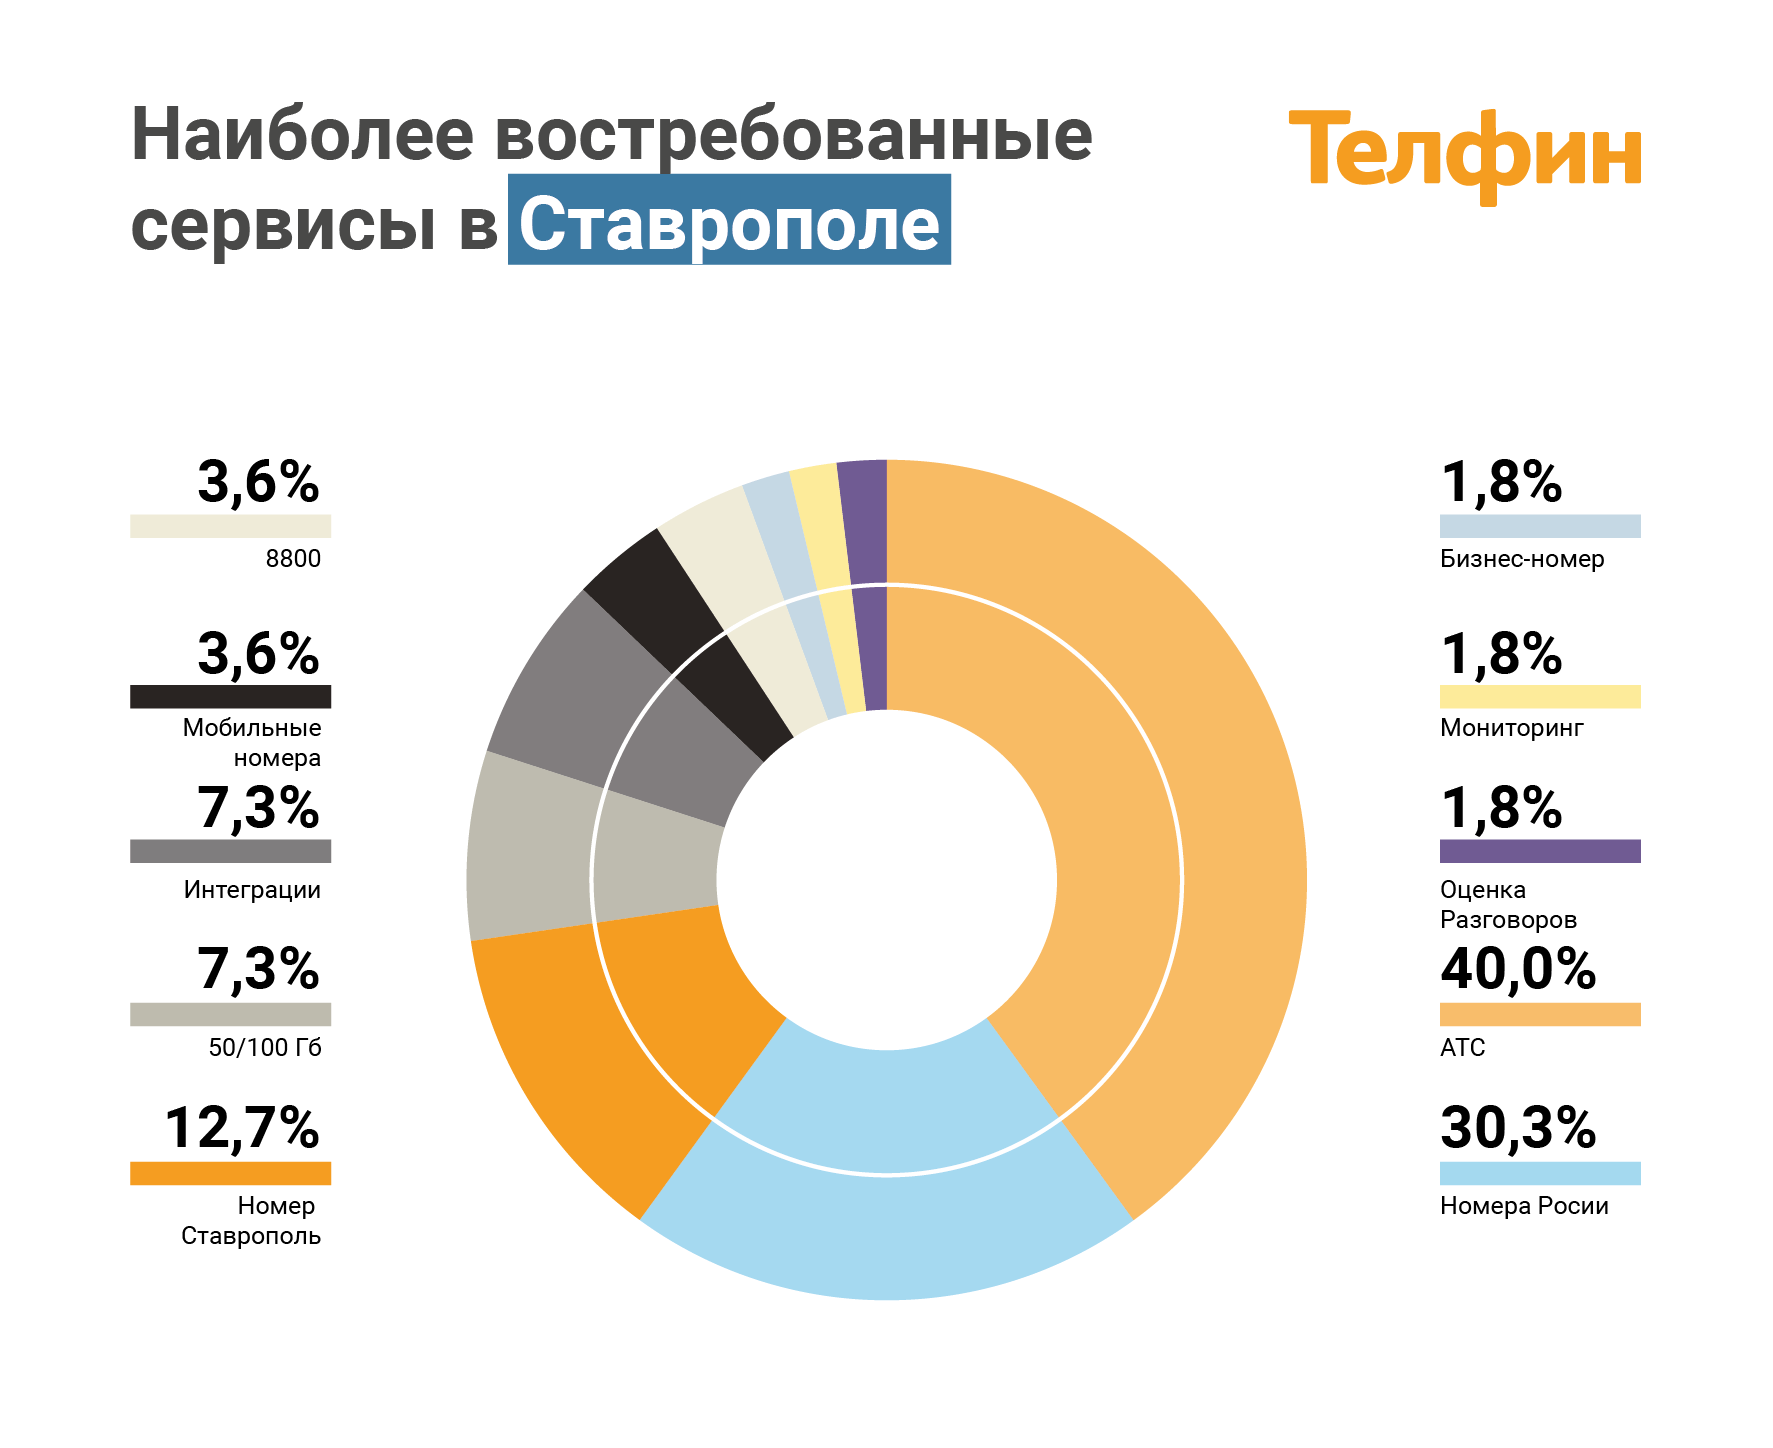 Наиболее востребованные сервисы ip-телефонии в Ставрополе